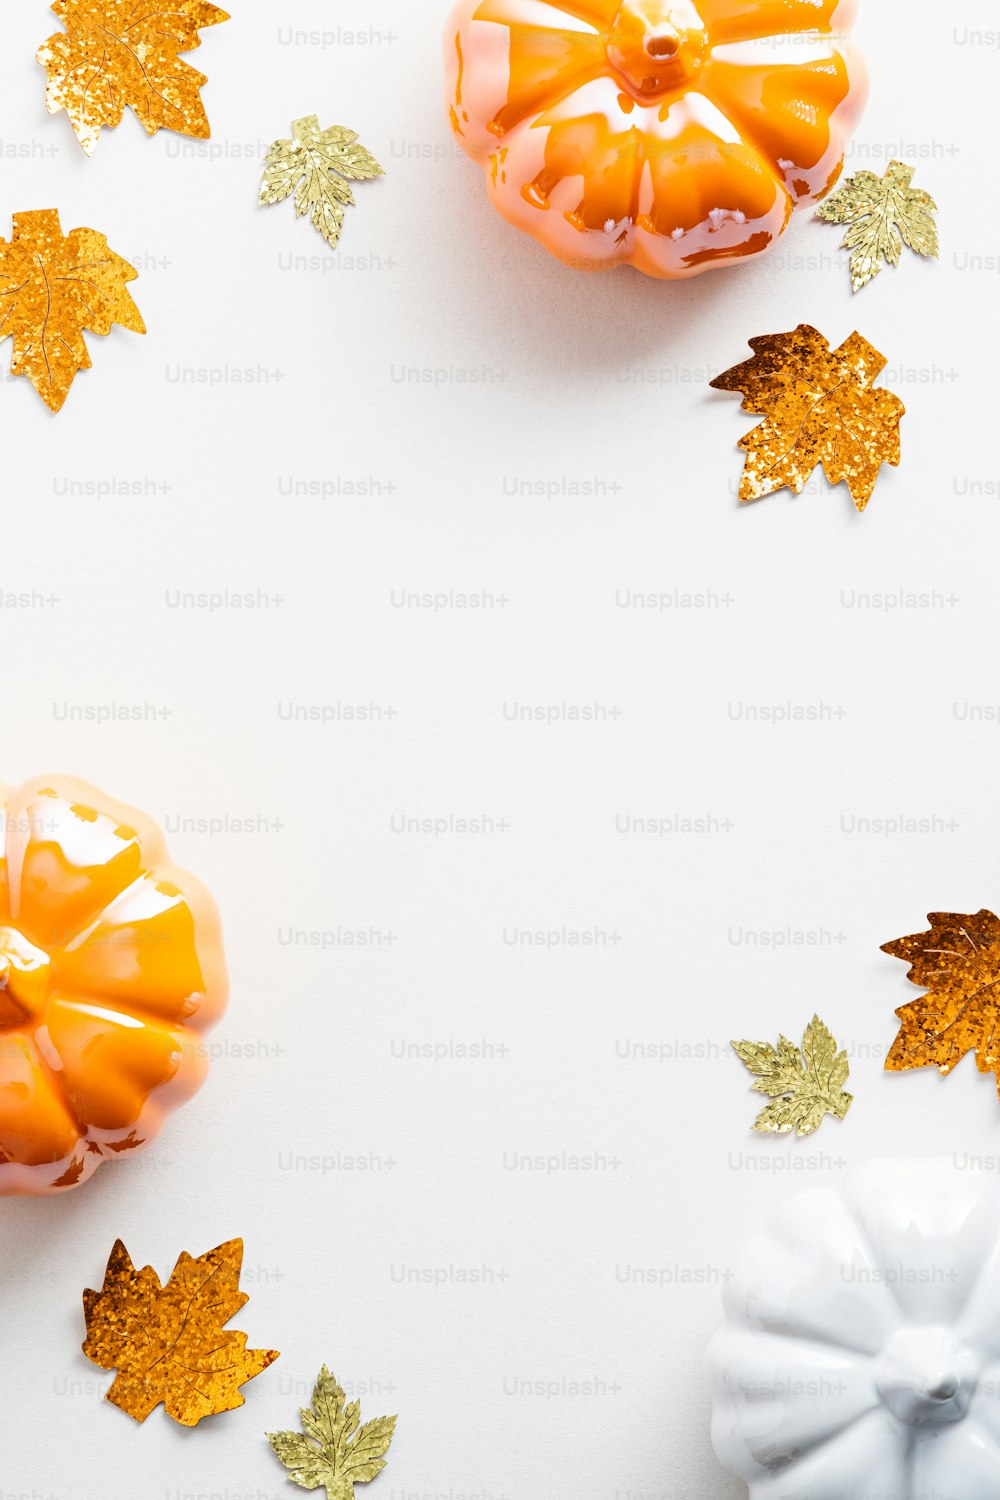 Composição plana de outono com abóboras e folhas de bordo em um fundo branco. Outono, outono, conceito de Ação de Graças.